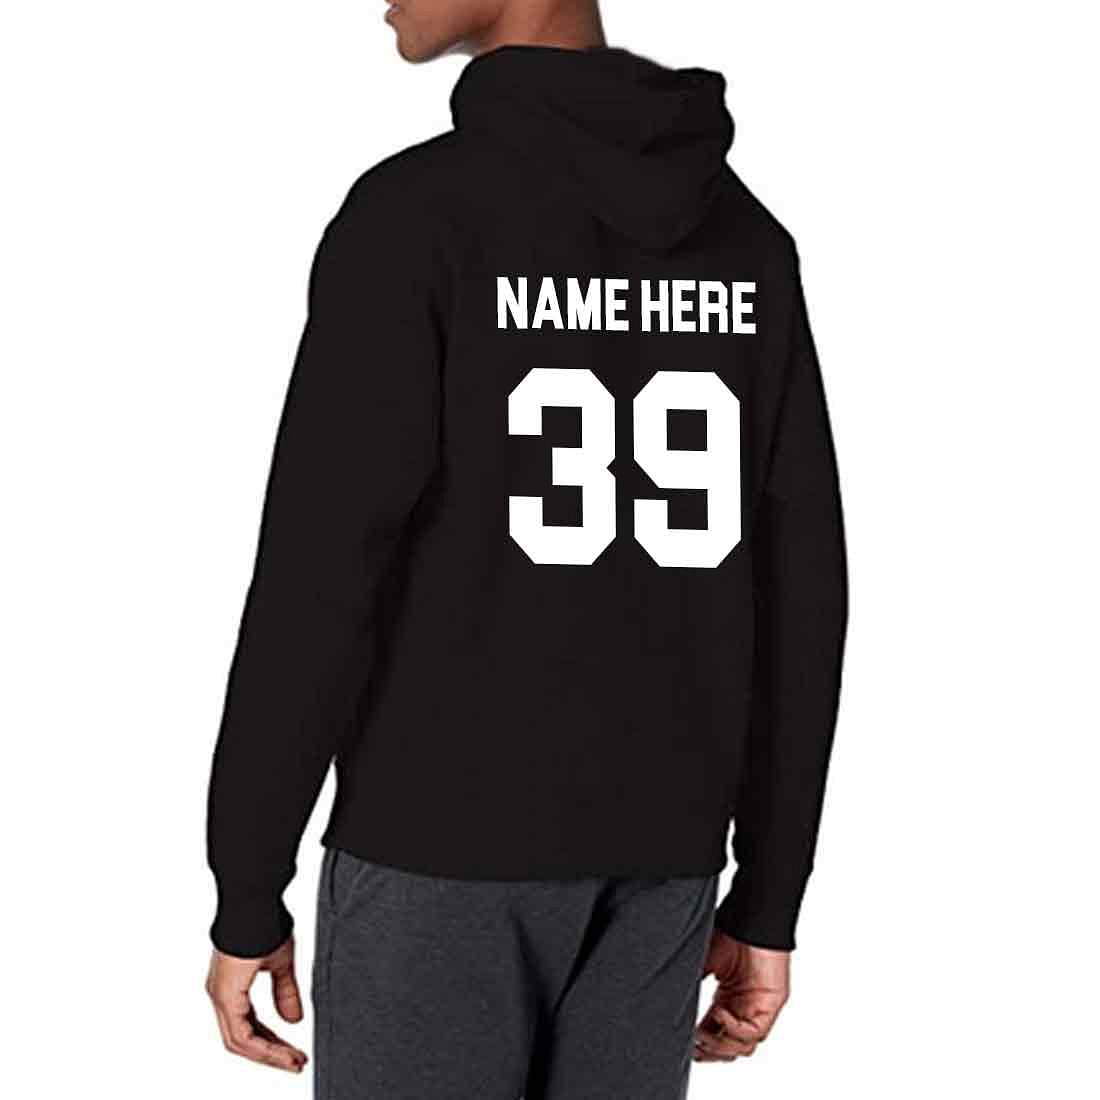 Nutcase Personalized Sweatshirts Hoodies Unisex-Name Number Nutcase